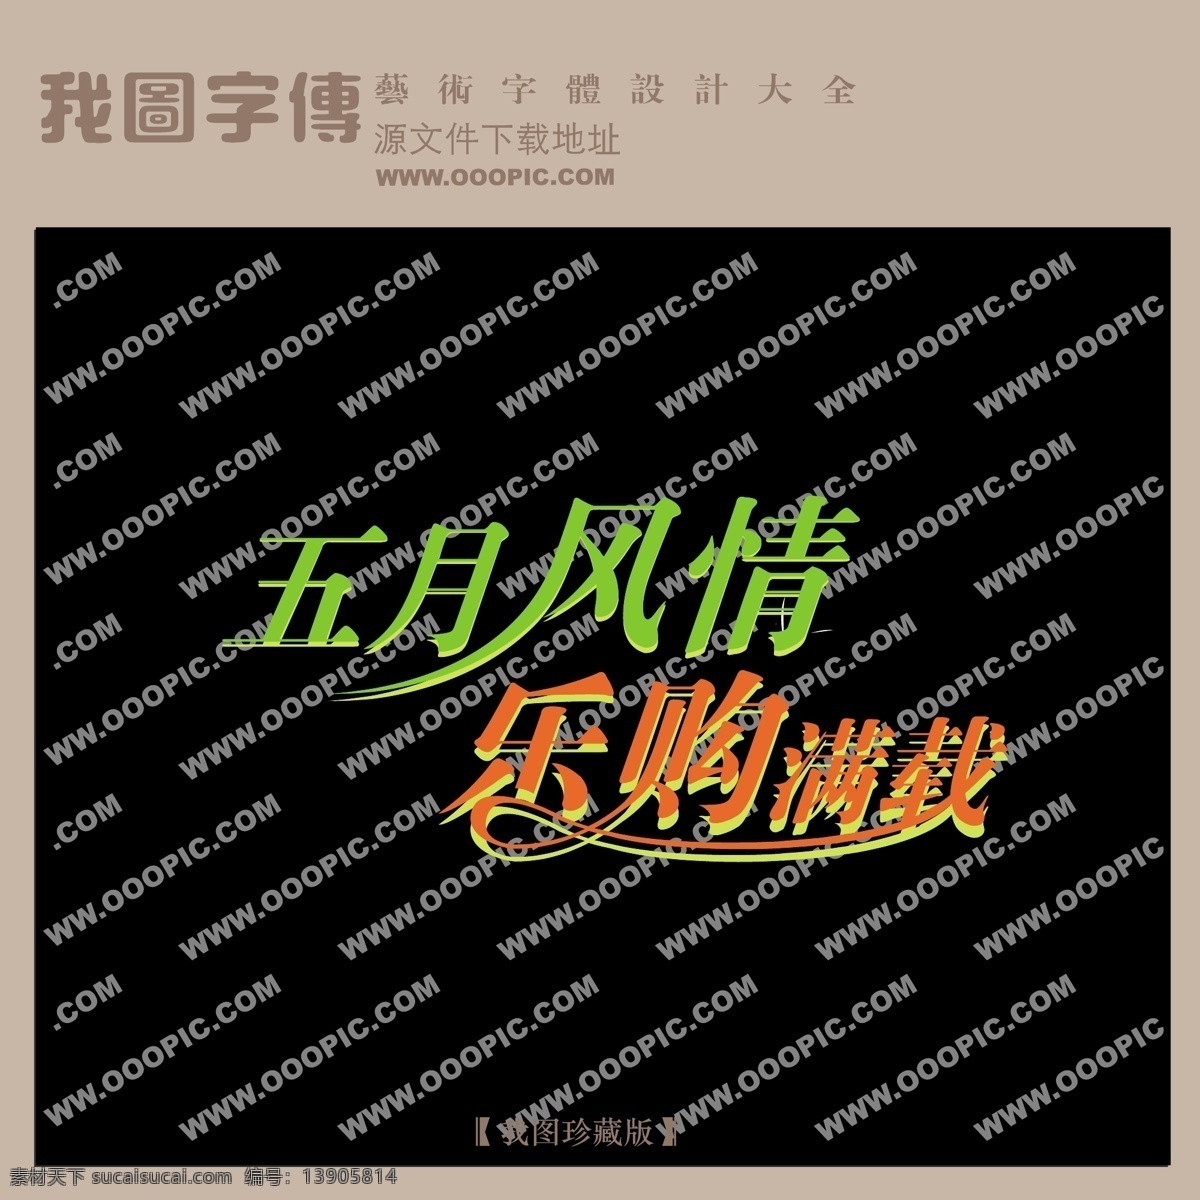 五月 风情 购物 满载 中文 现代艺术 字 创意 美工 艺术 中国字体下载 矢量图